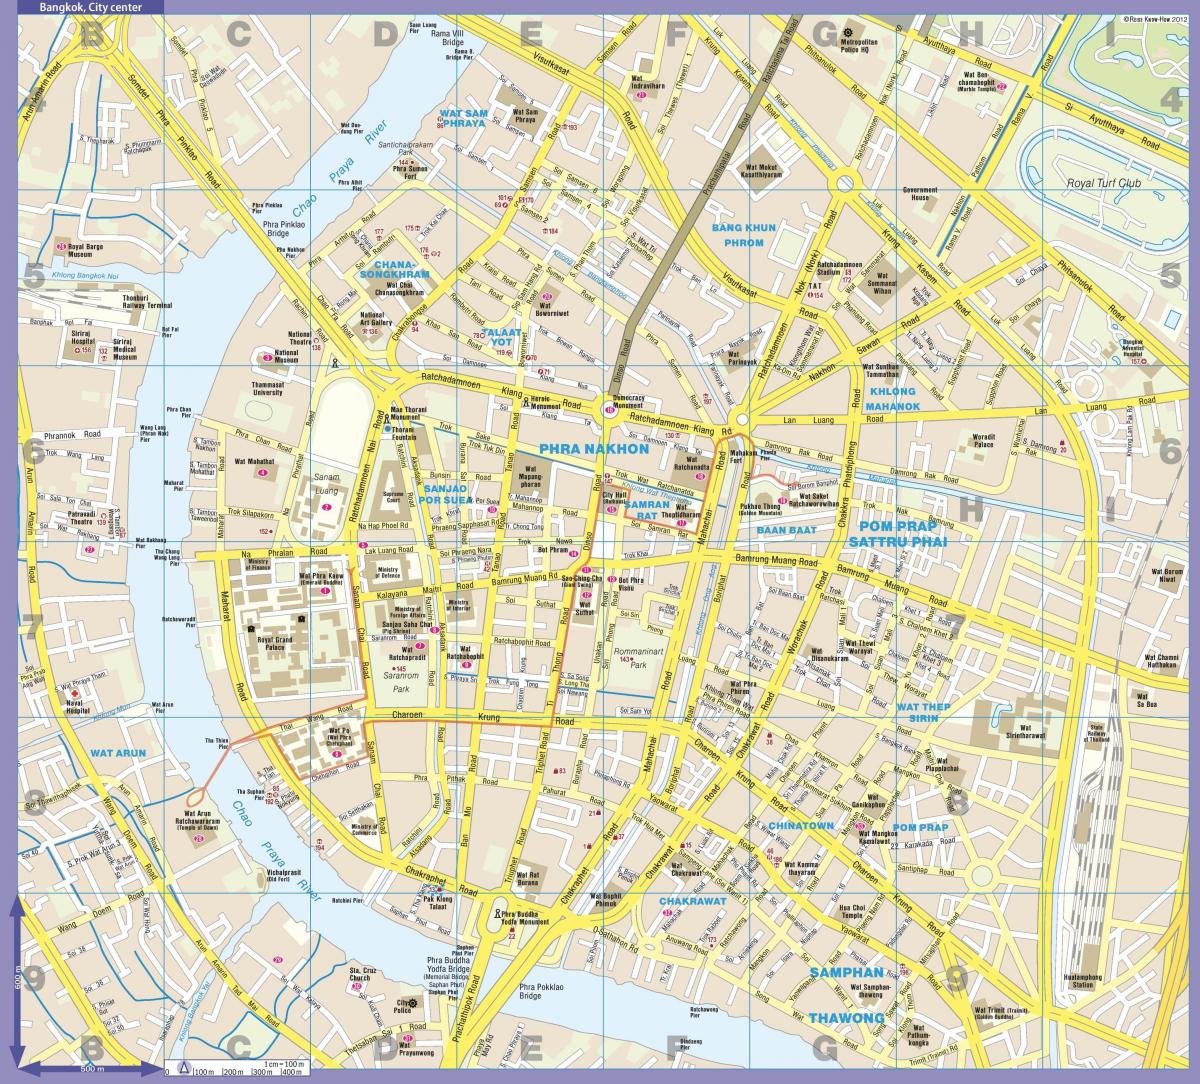 Mapa del centro de Bangkok (Krung Thep)